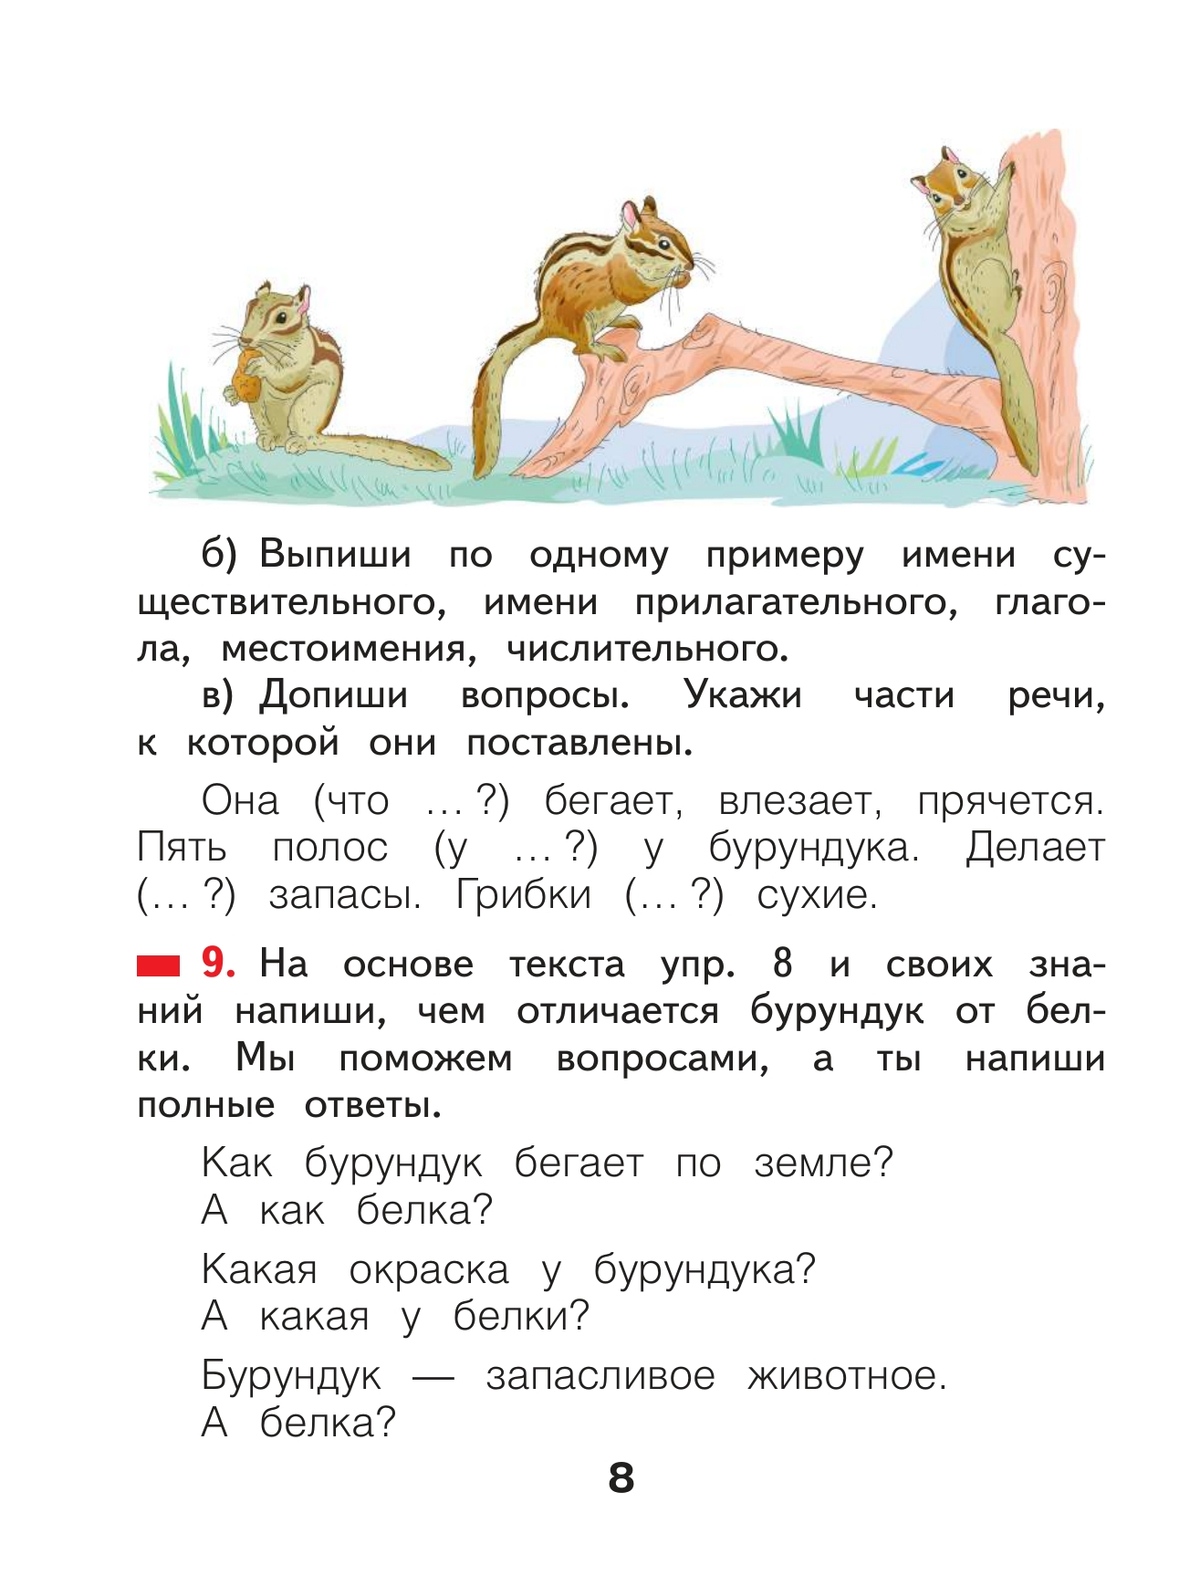 Русский язык. 2 класс. Учебное пособие В 2 ч. Часть 2 10